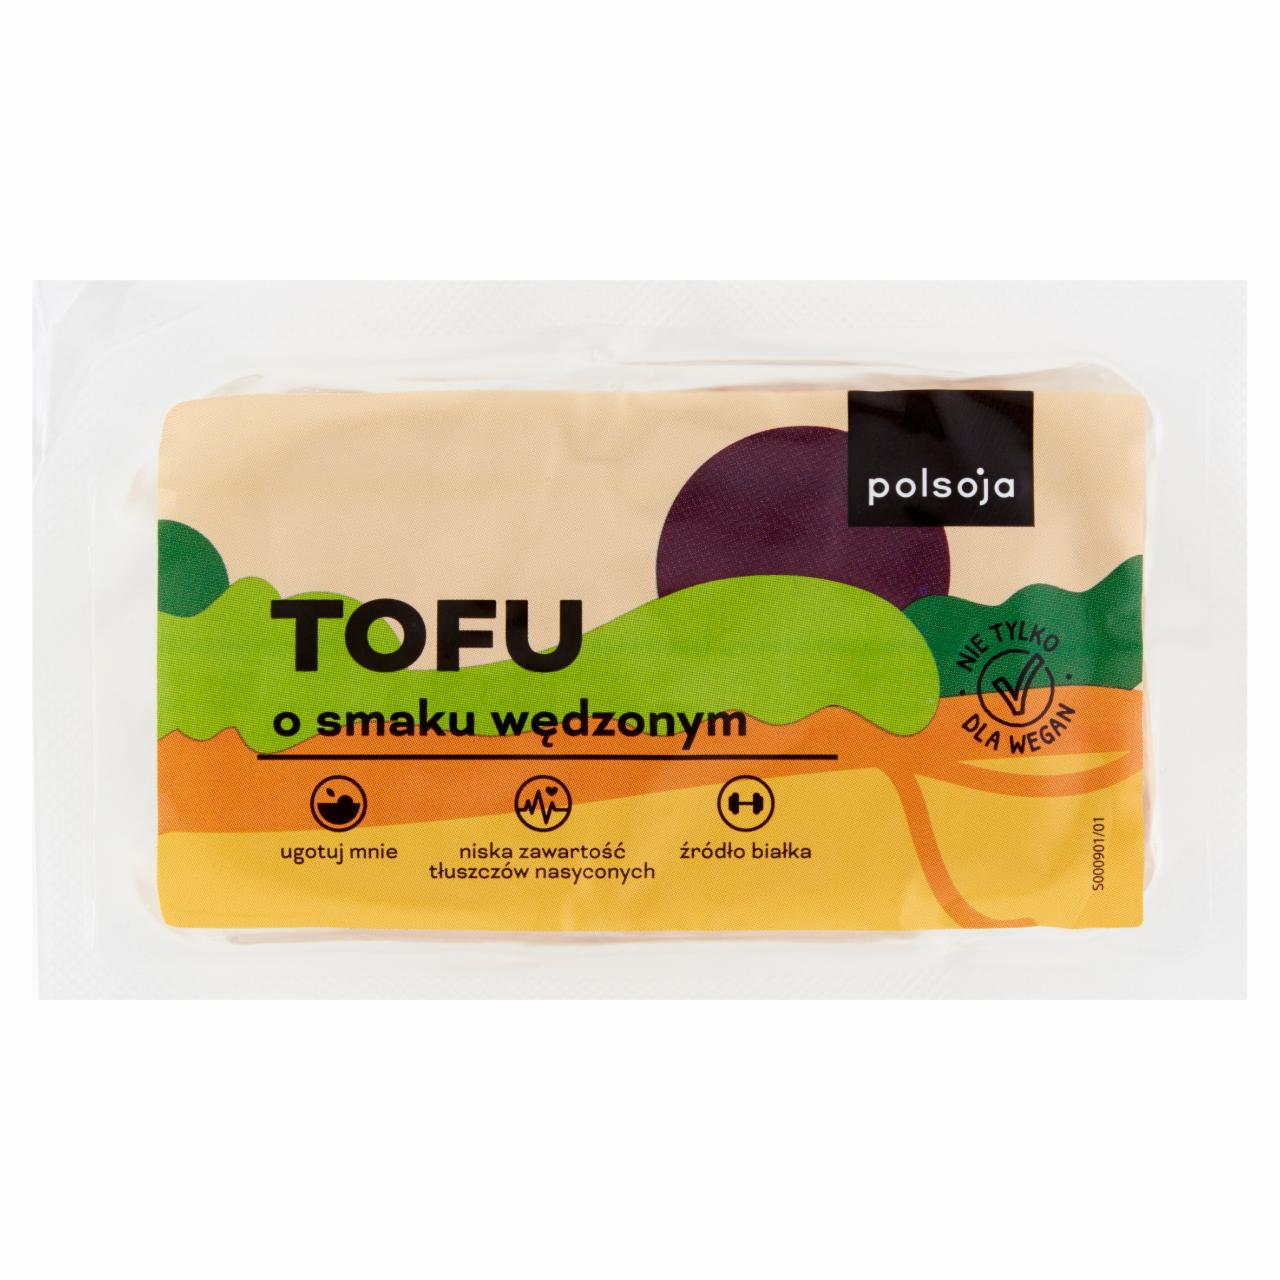 Zdjęcia - Polsoja Tofu o smaku wędzonym 180 g